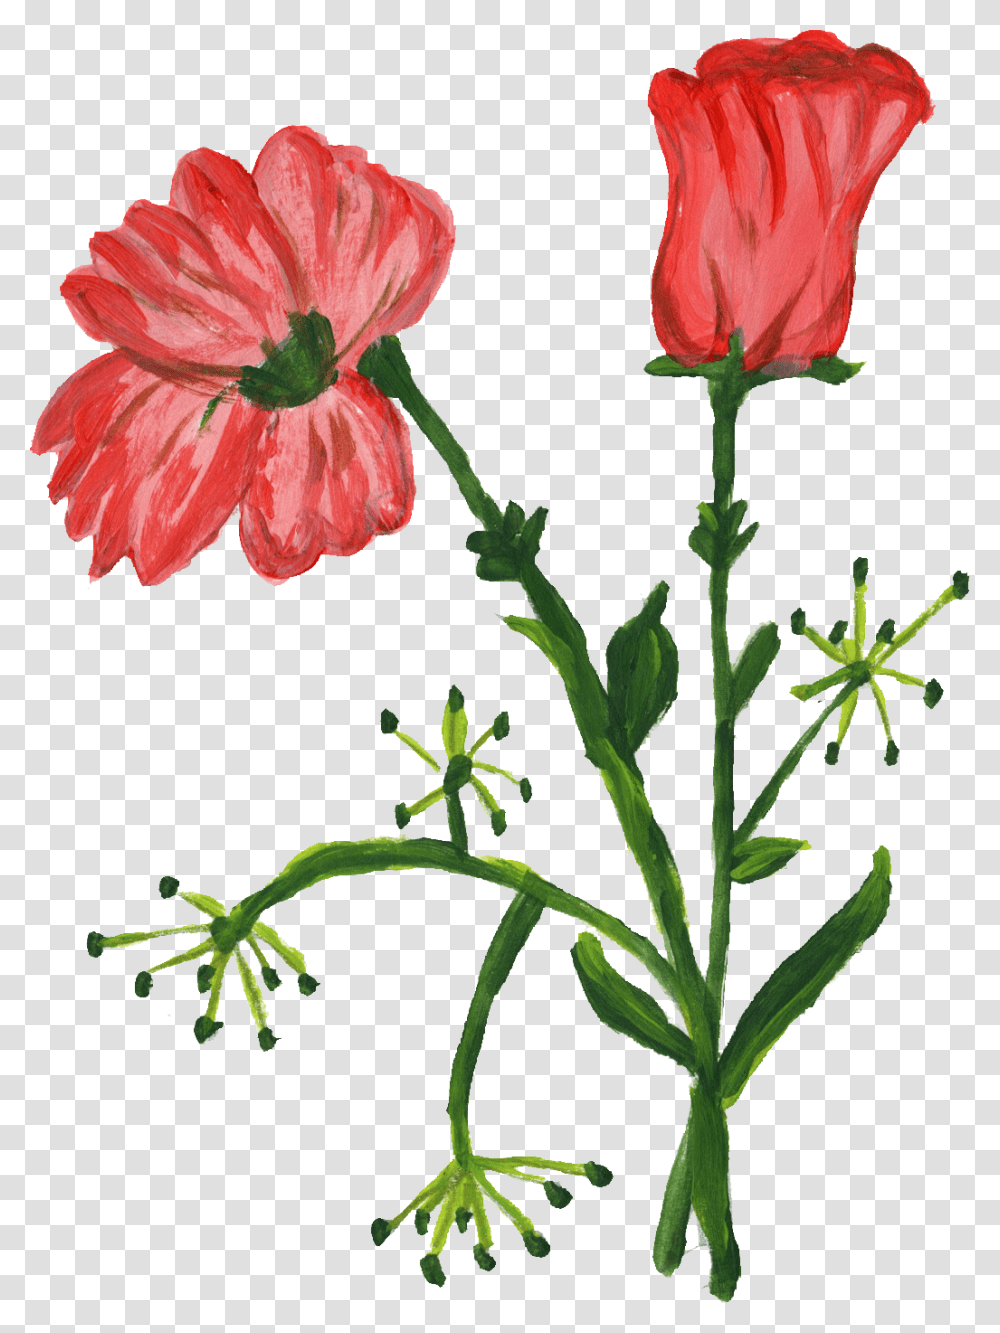 Poppy Family, Plant, Flower, Blossom, Geranium Transparent Png